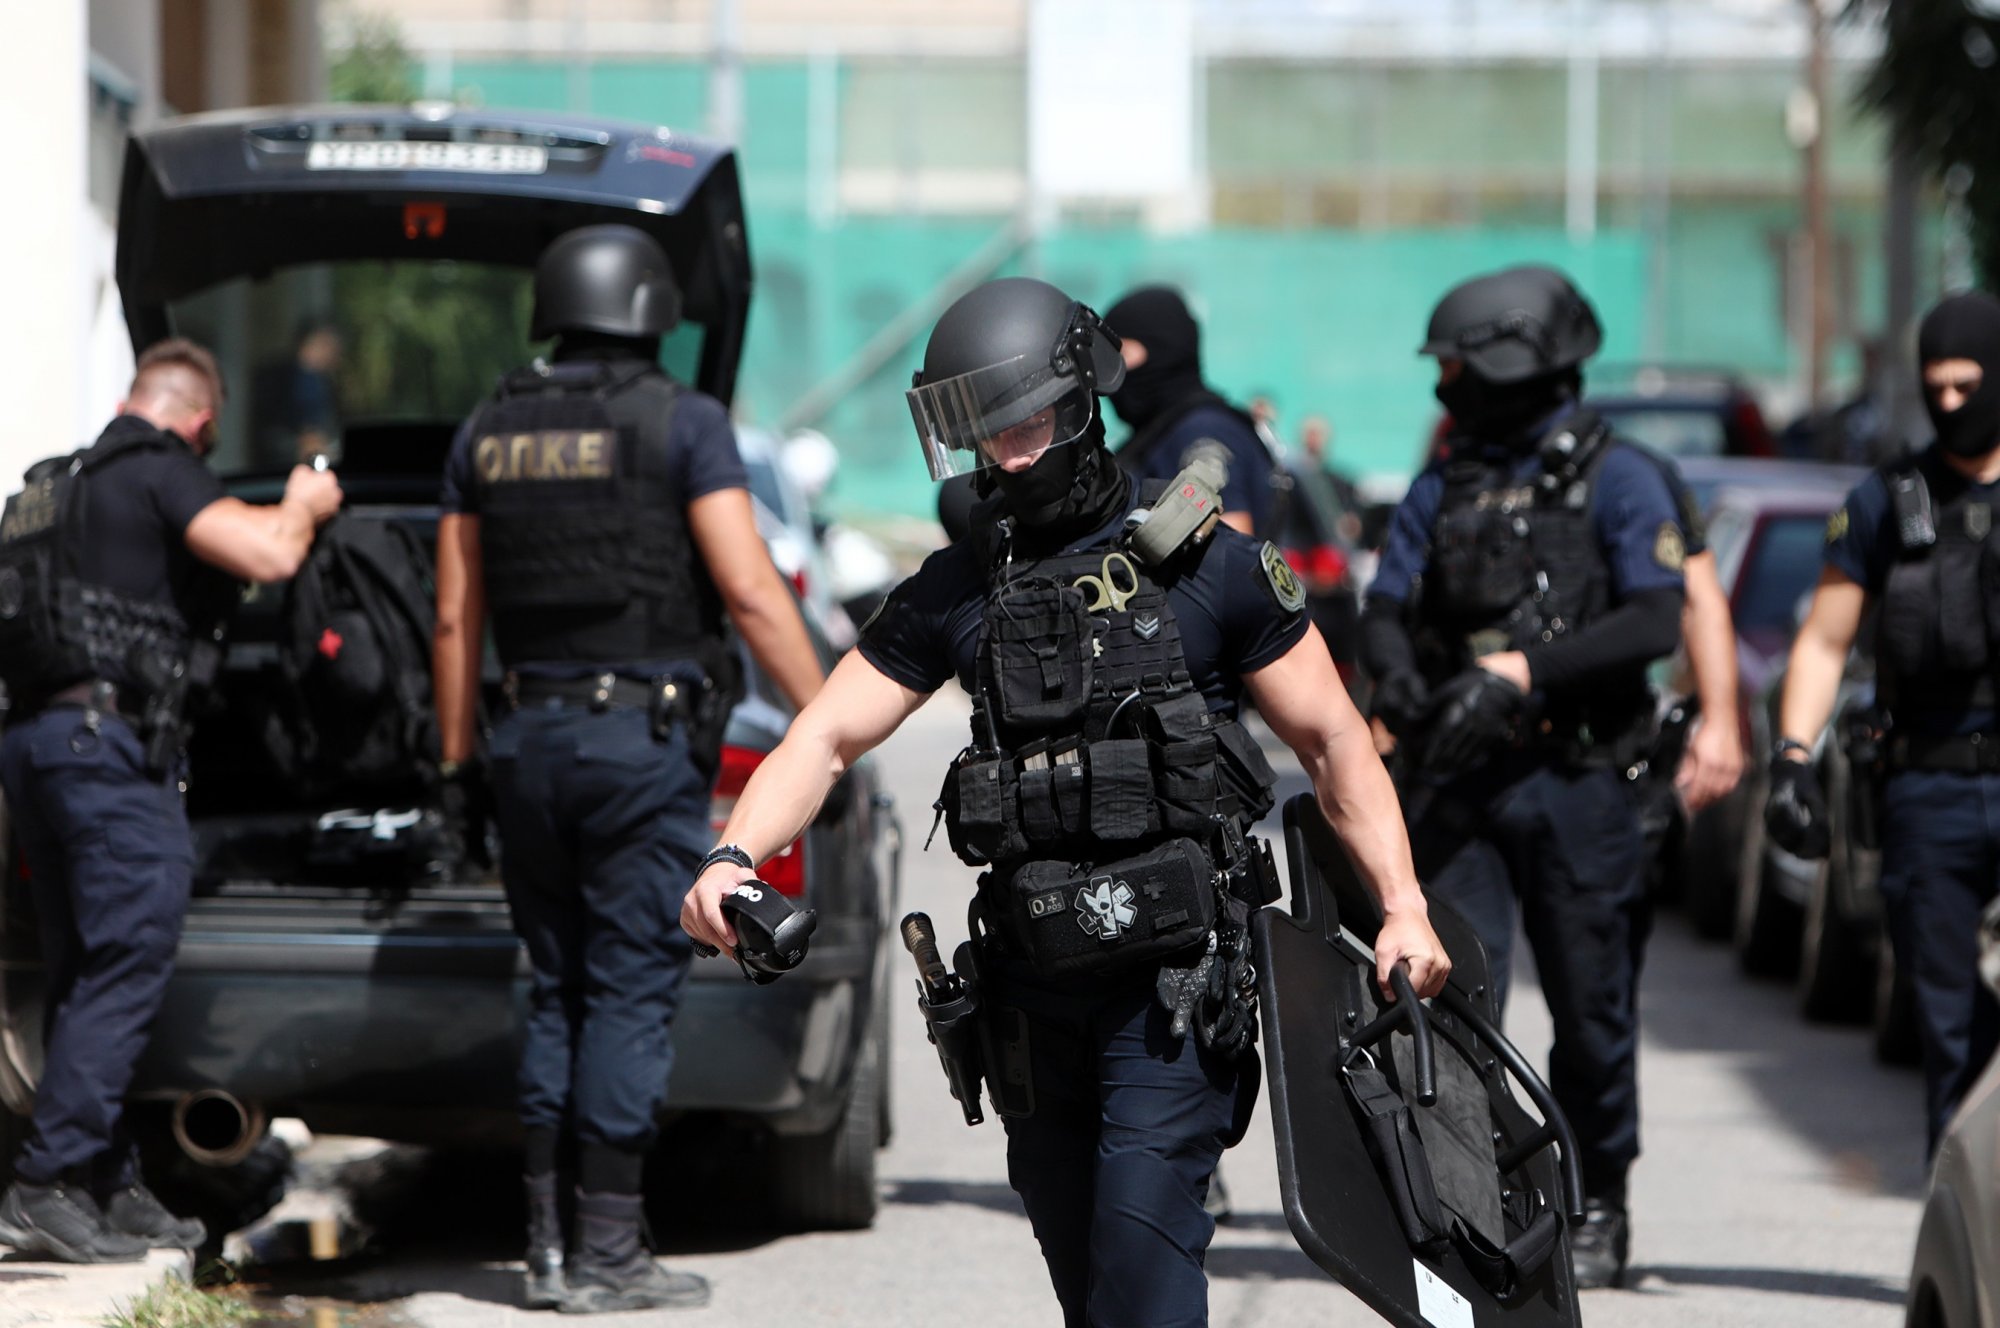 Αποτράπηκε εγκληματική ενέργεια με τις συλλήψεις στην υπόθεση των εκρηκτικών, λέει η Δημογλίδου